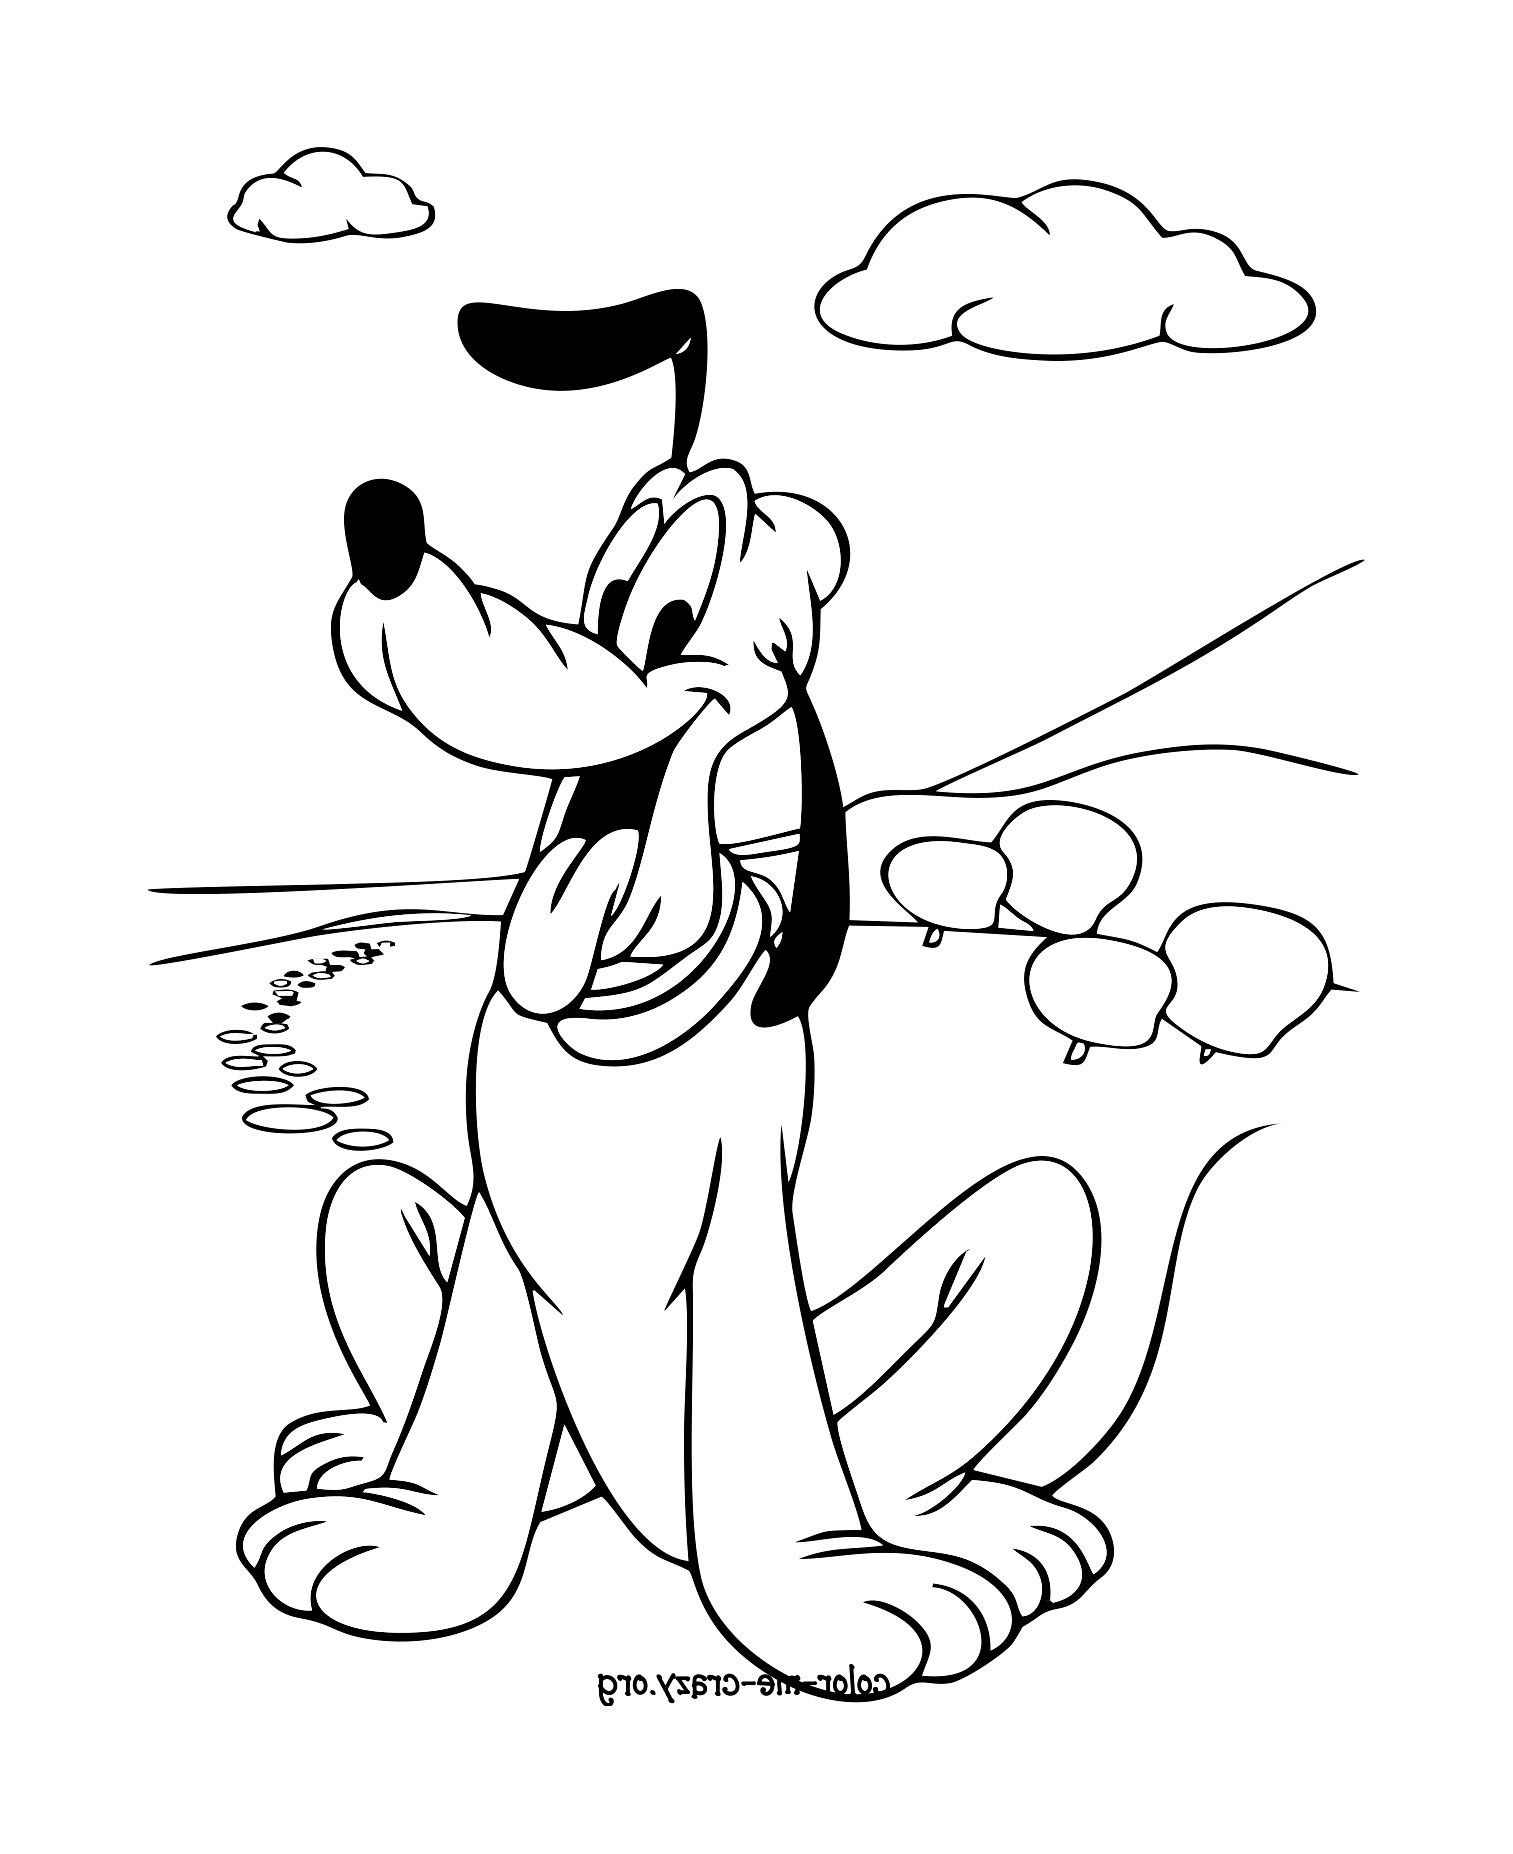 Coloração do cão do Mickey